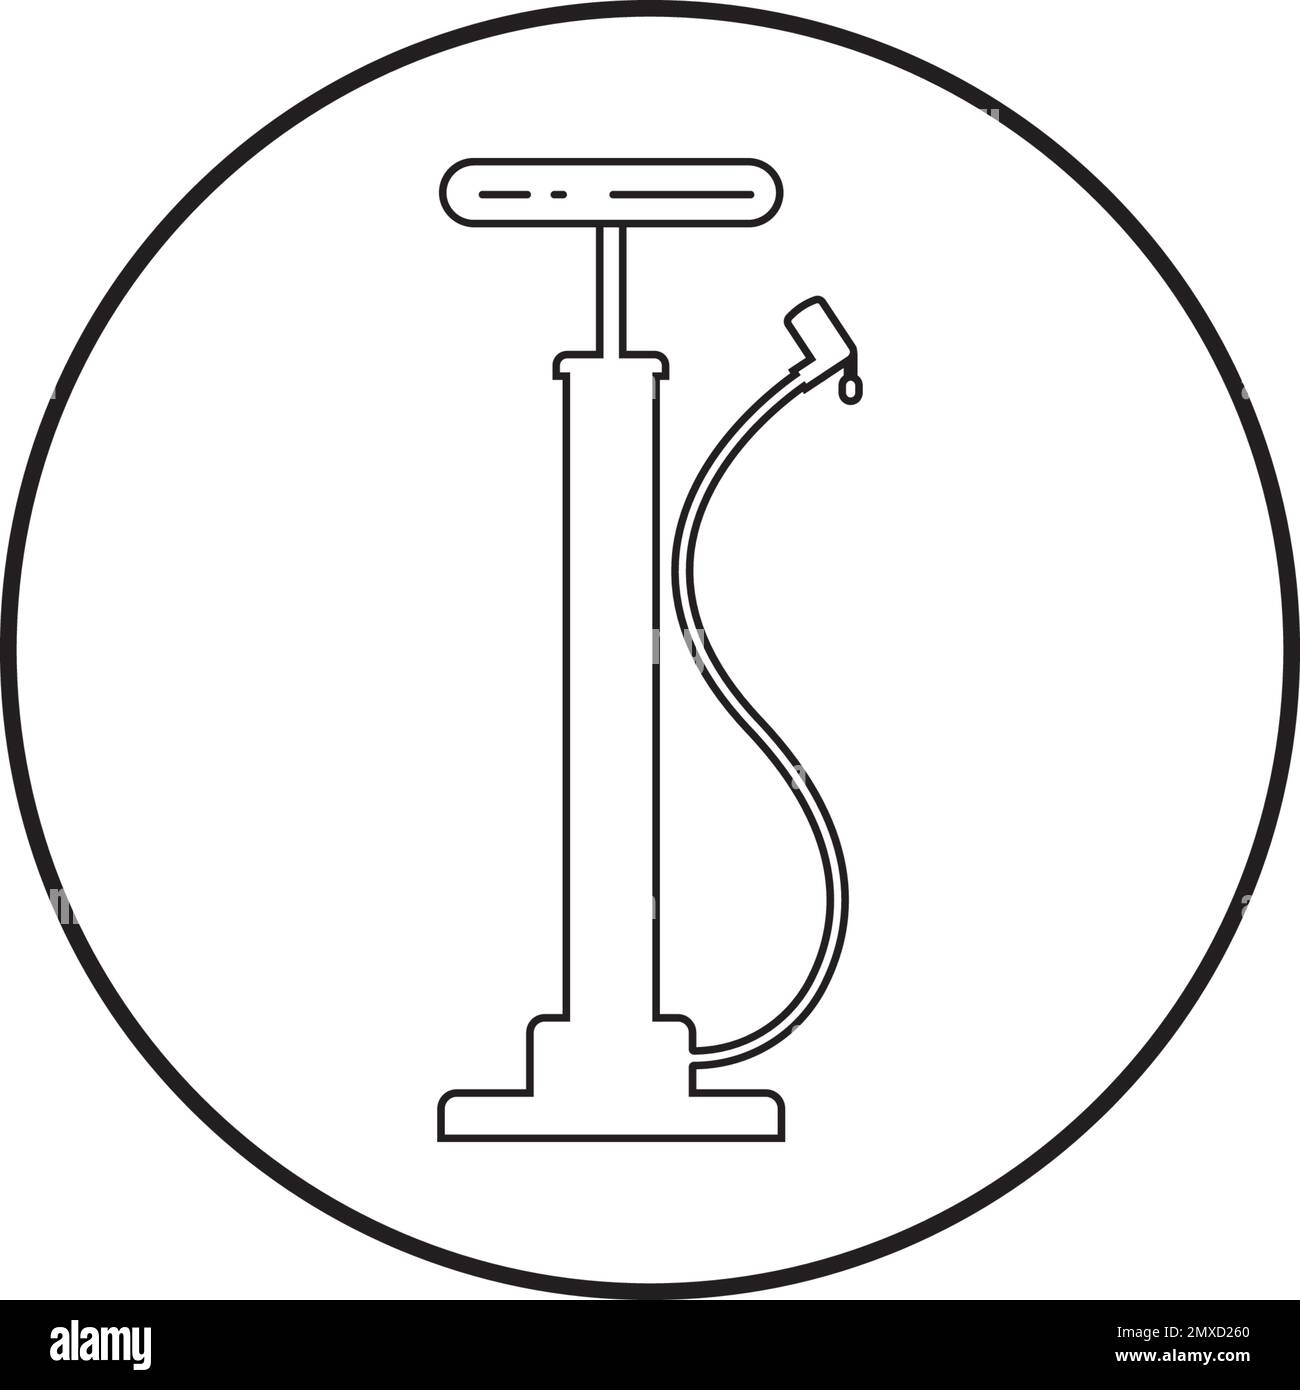 Entwurfsvorlage für Vektordarstellung des Symbols für die Luftpumpe des Fahrrads. Stock Vektor